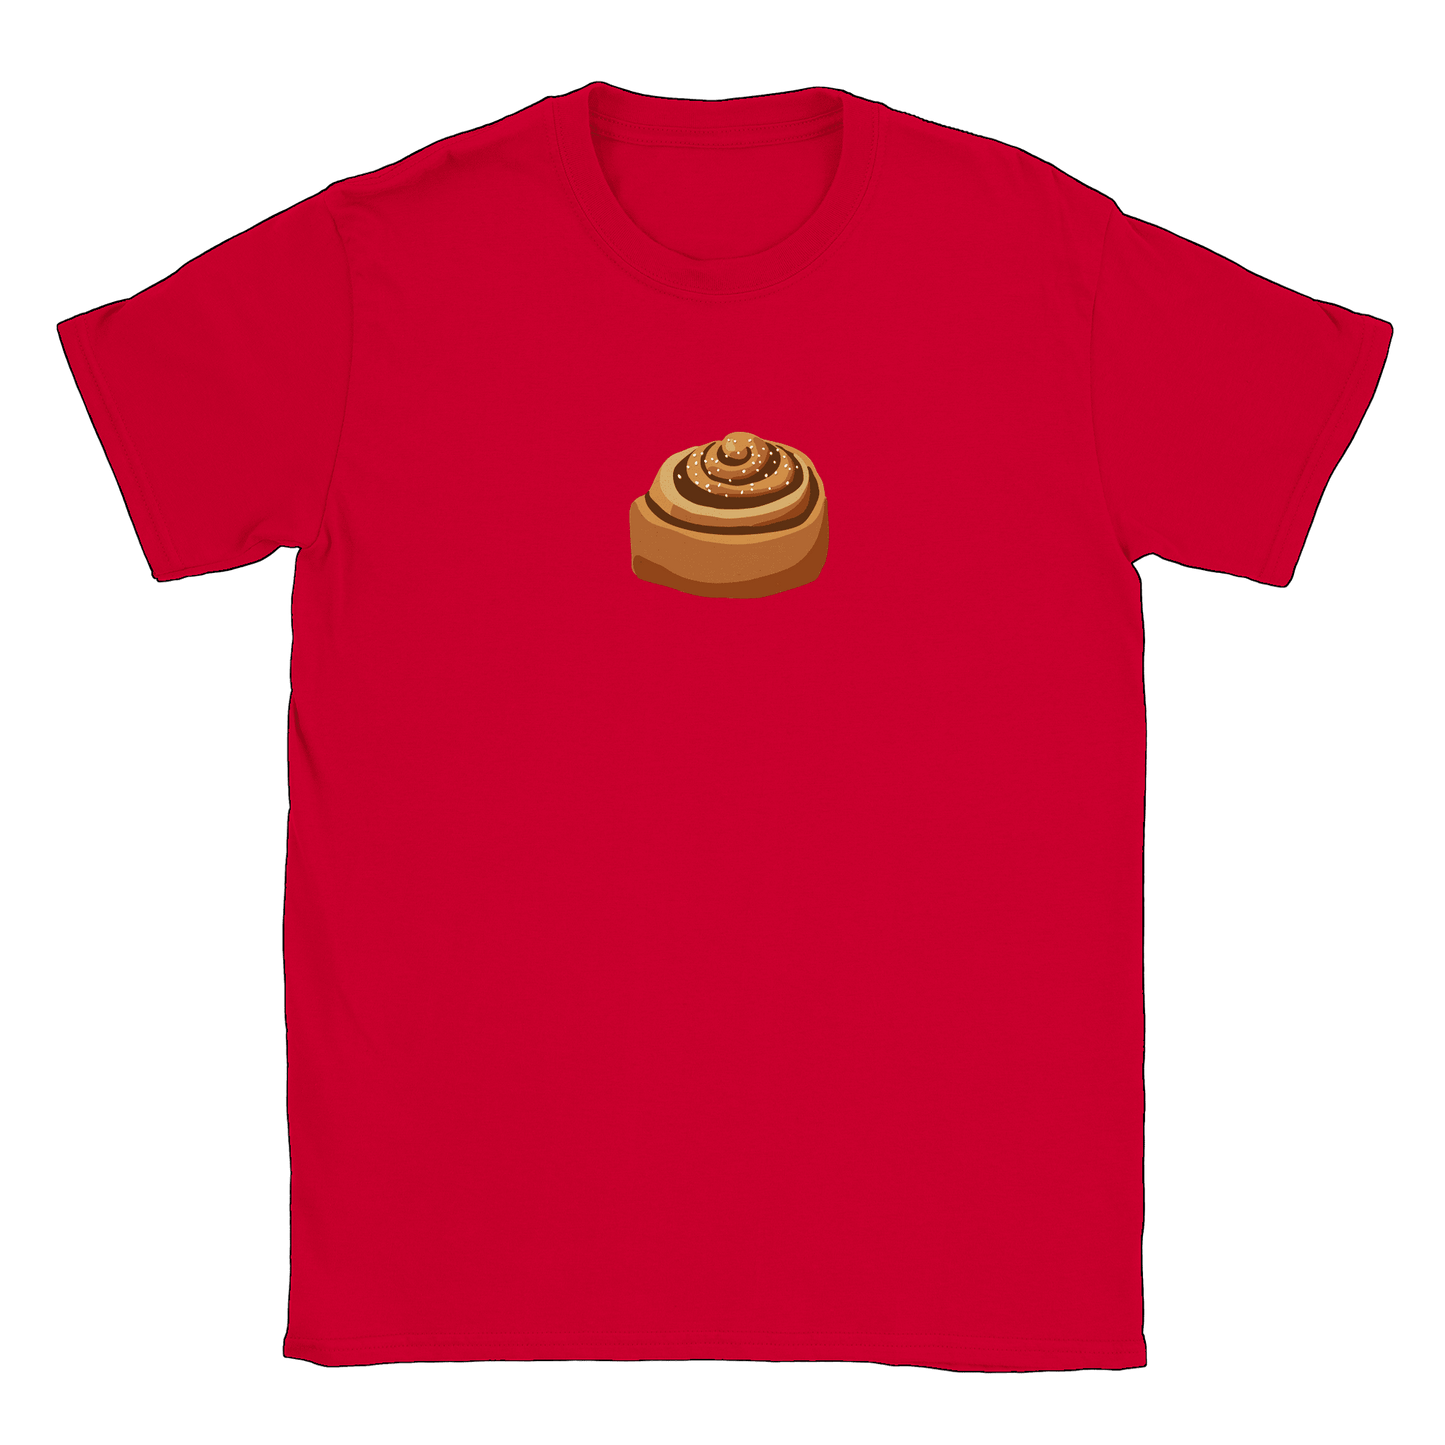 Kanelbulle - T-shirt Röd